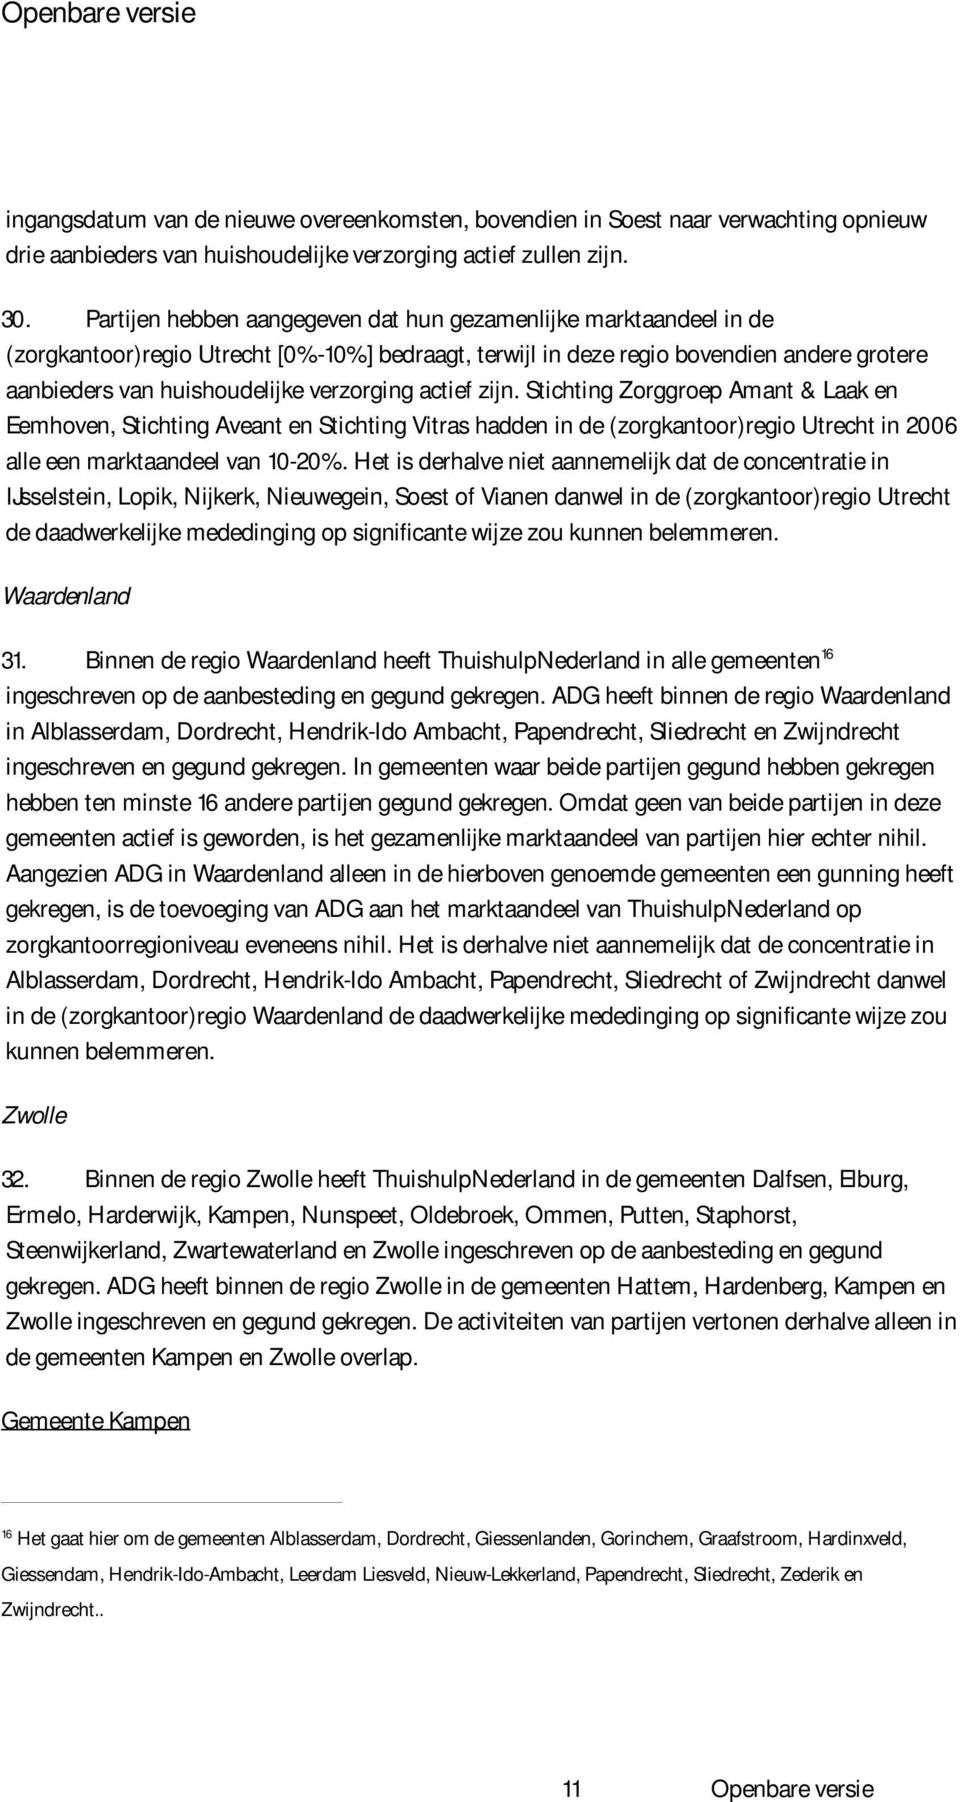 verzorging actief zijn. Stichting Zorggroep Amant & Laak en Eemhoven, Stichting Aveant en Stichting Vitras hadden in de (zorgkantoor)regio Utrecht in 2006 alle een marktaandeel van 10-20%.